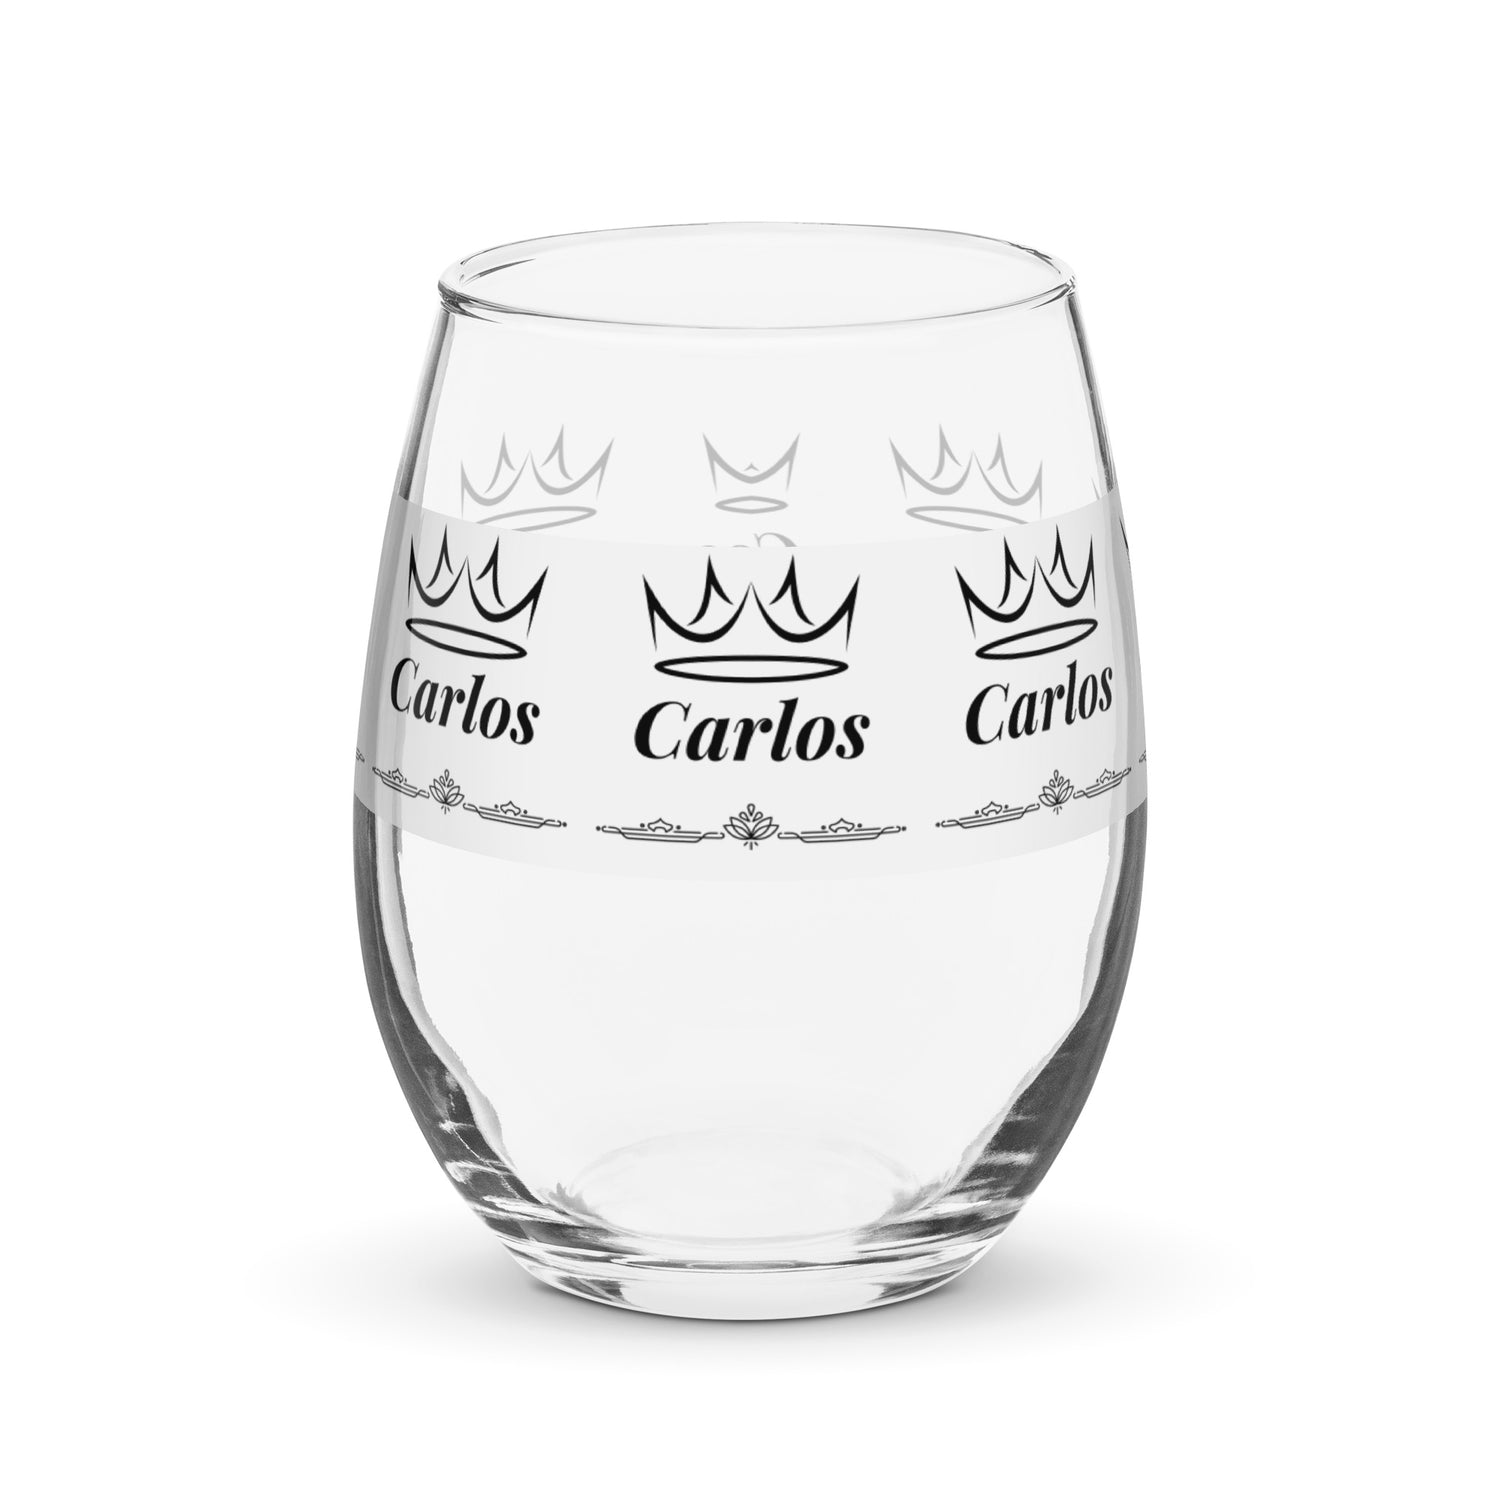 carlos name wine glass personalized wine glass wine glass